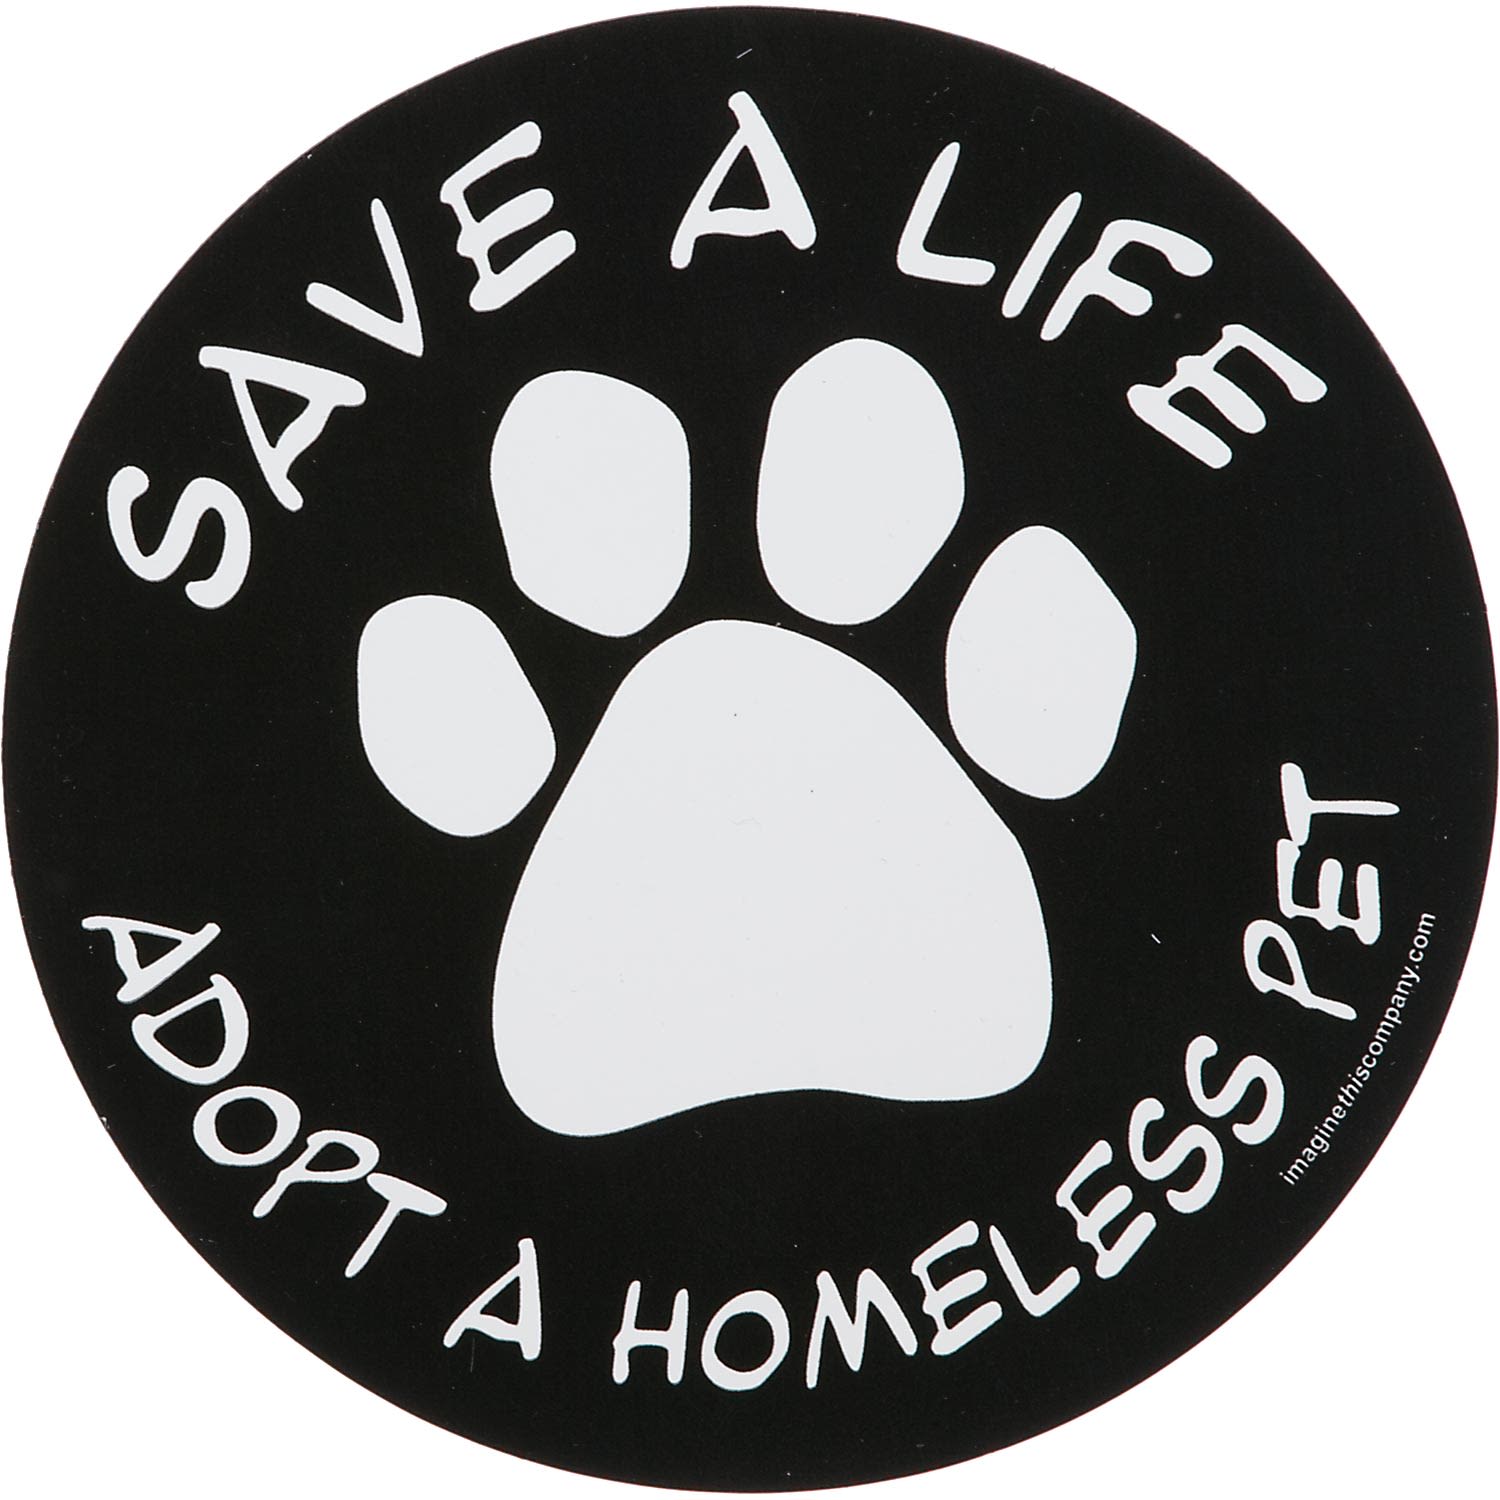 Photos - Photo Frame / Album Imagine This Imagine This Save A Life Adopt A Homeless Pet Car Magnet, 5 I